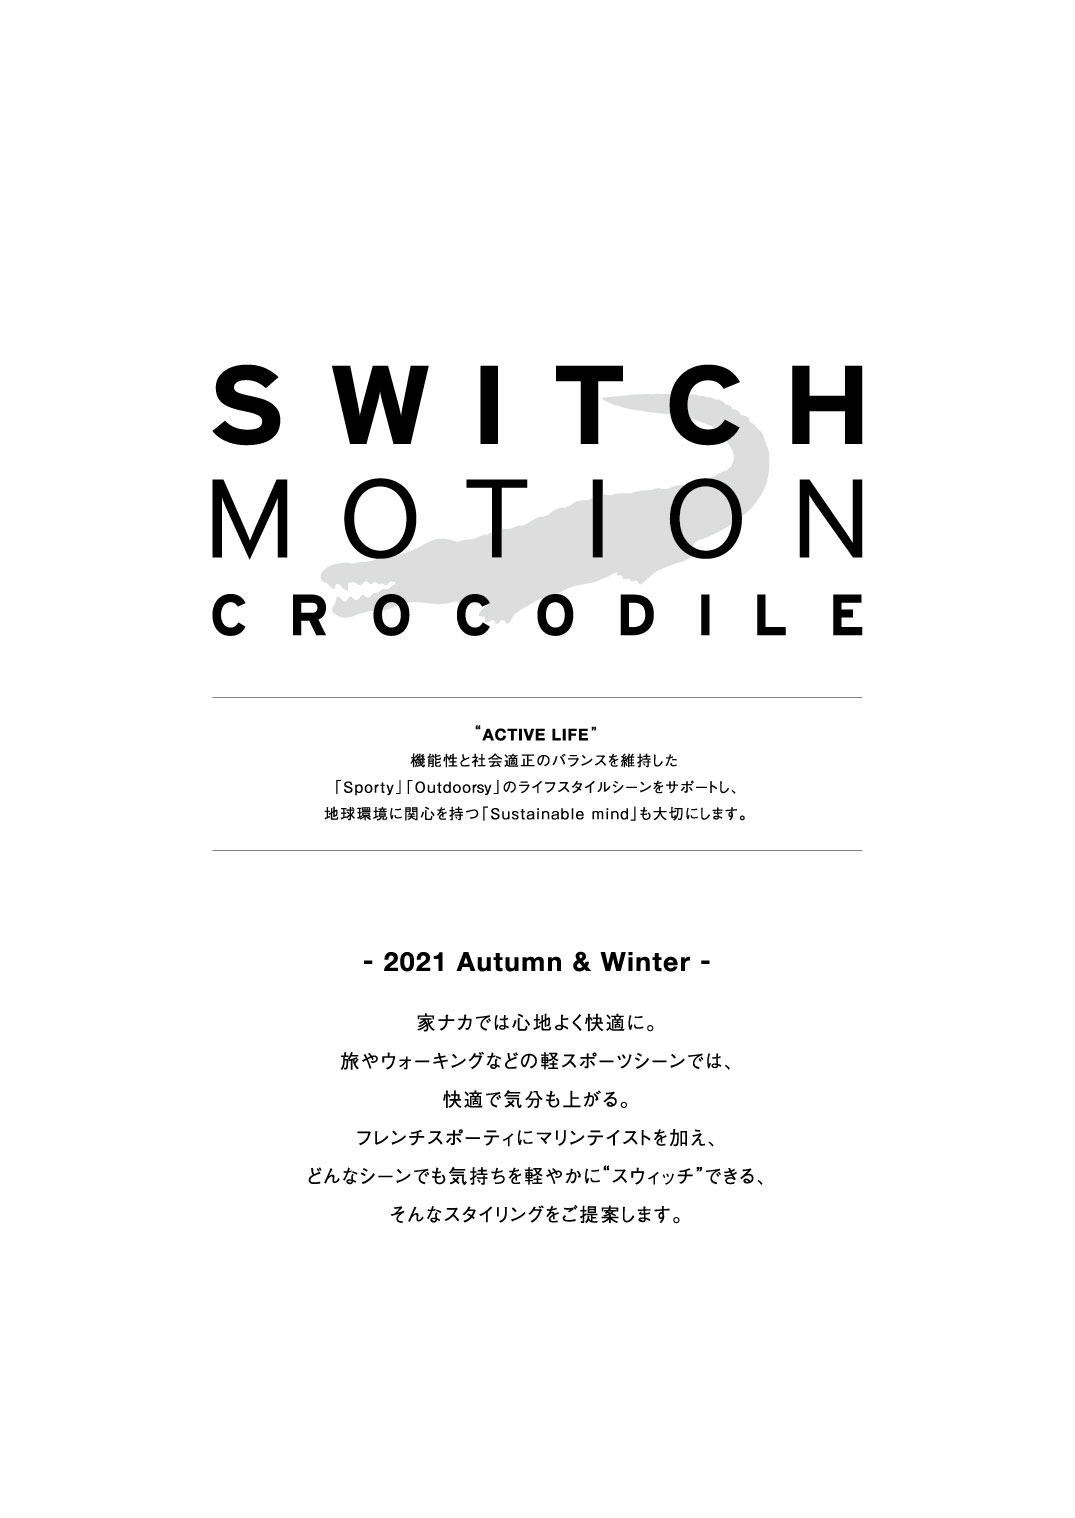 スウィッチモーション 2021春夏カタログ - クロコダイル(CROCODILE